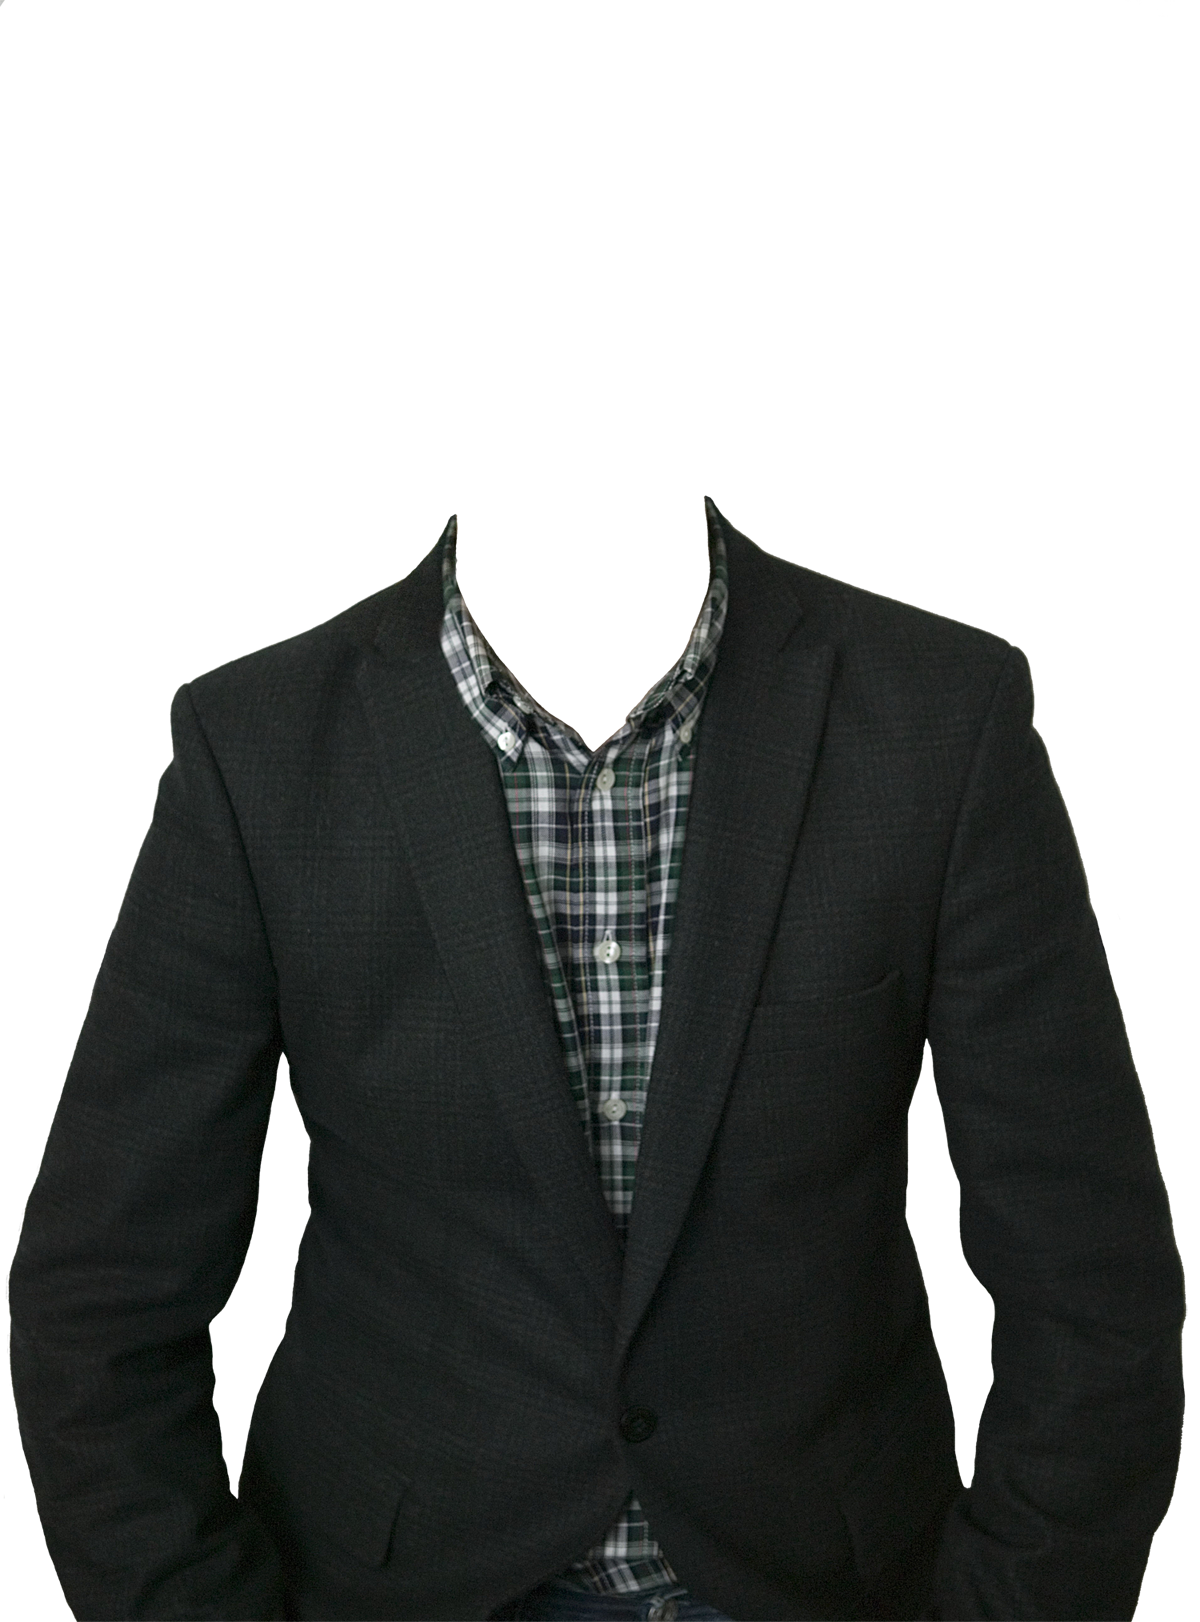 Suit PNG image transparent image download, size: 1200x1622px